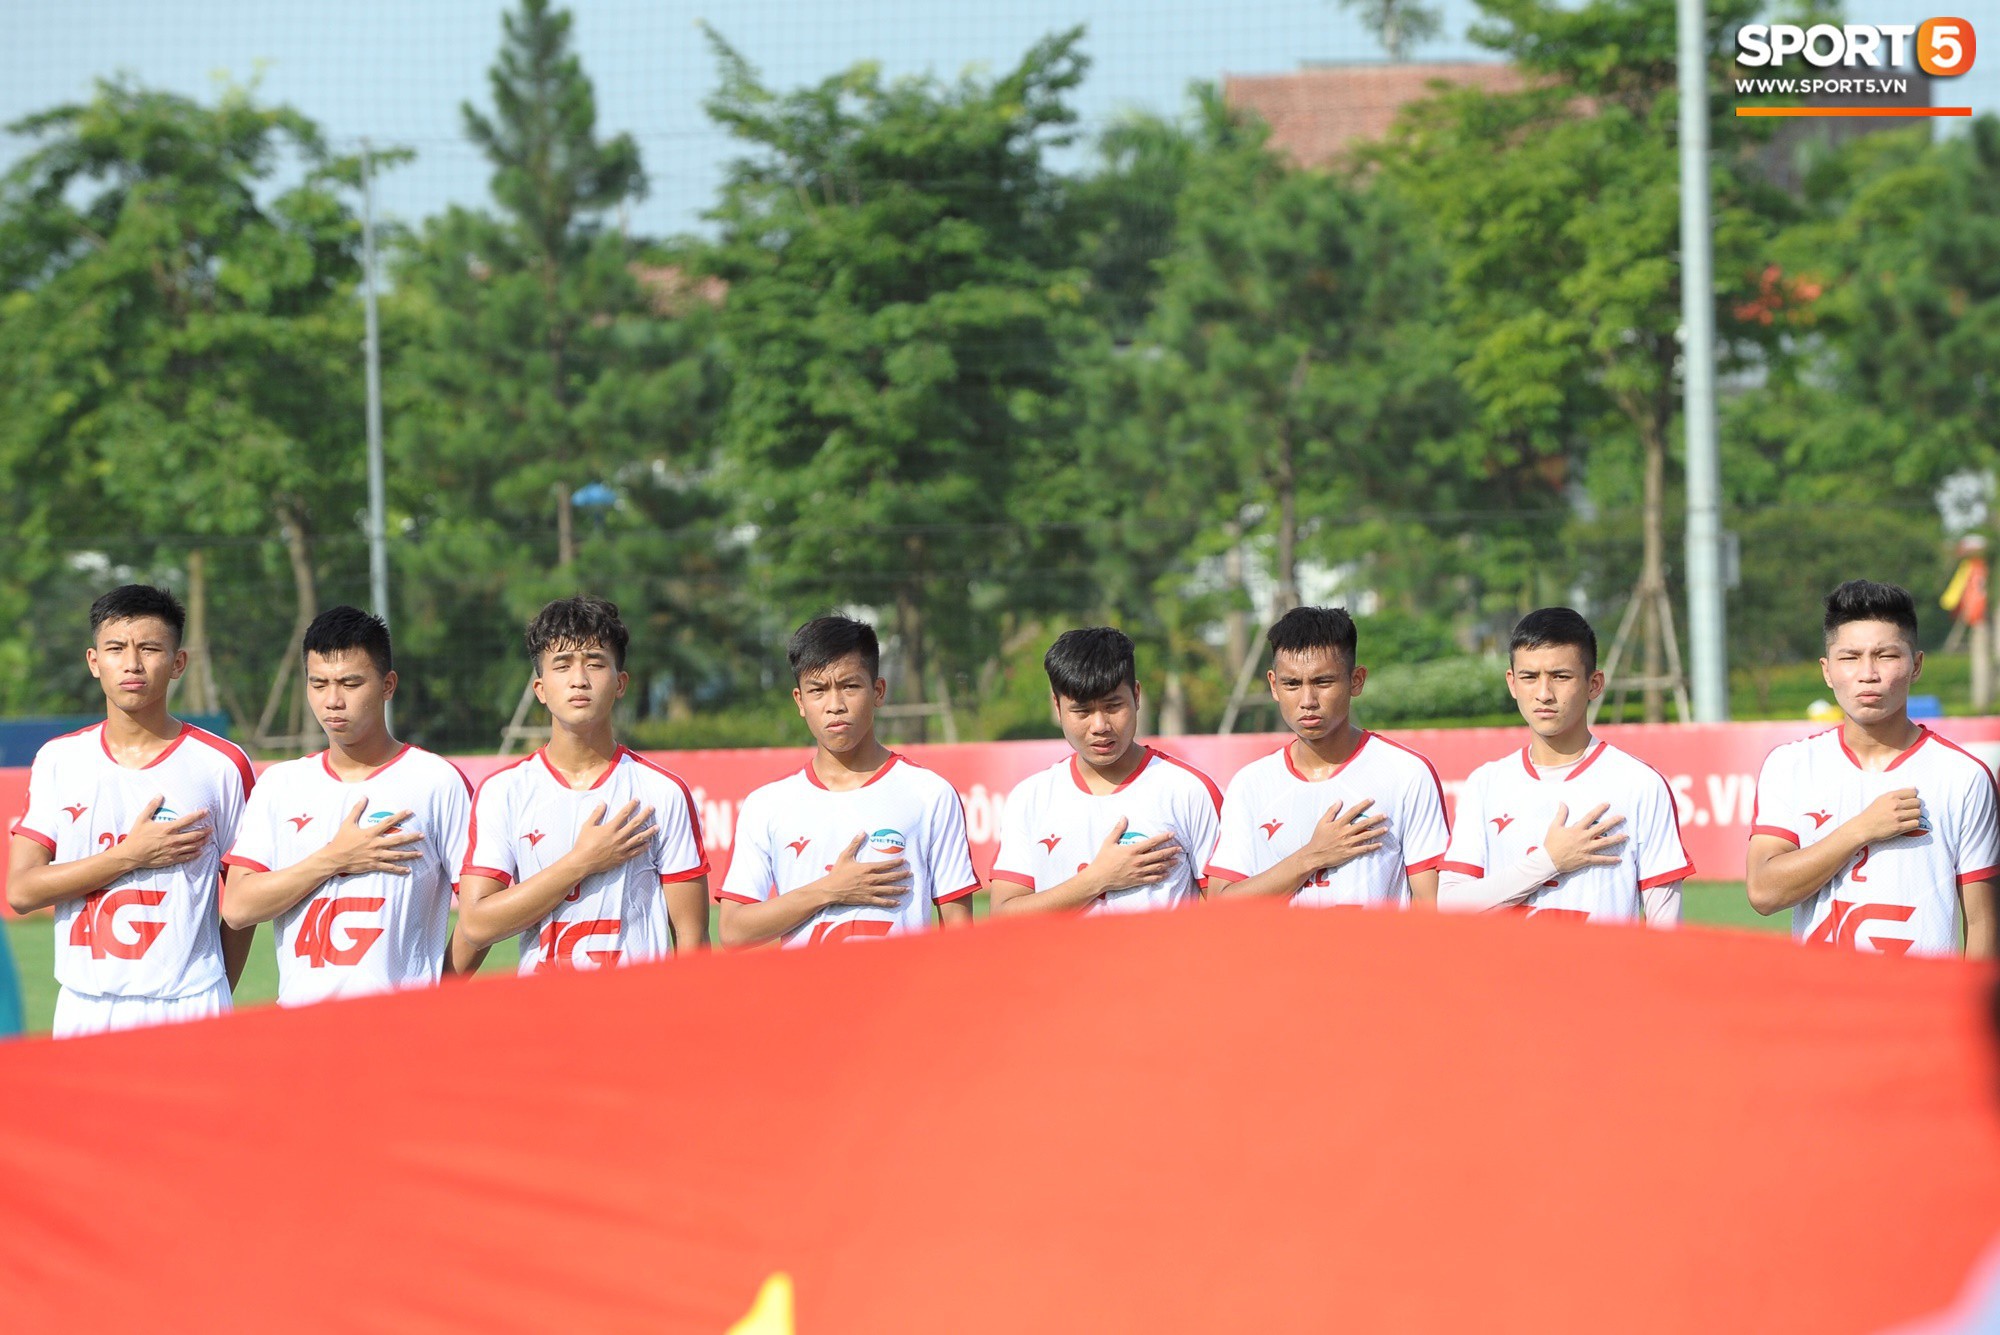 Sao trẻ U23 lập công, Viettel để Phố Hiến cầm hòa 1-1 trong ngày khai mạc giải U21 Quốc gia - Ảnh 1.